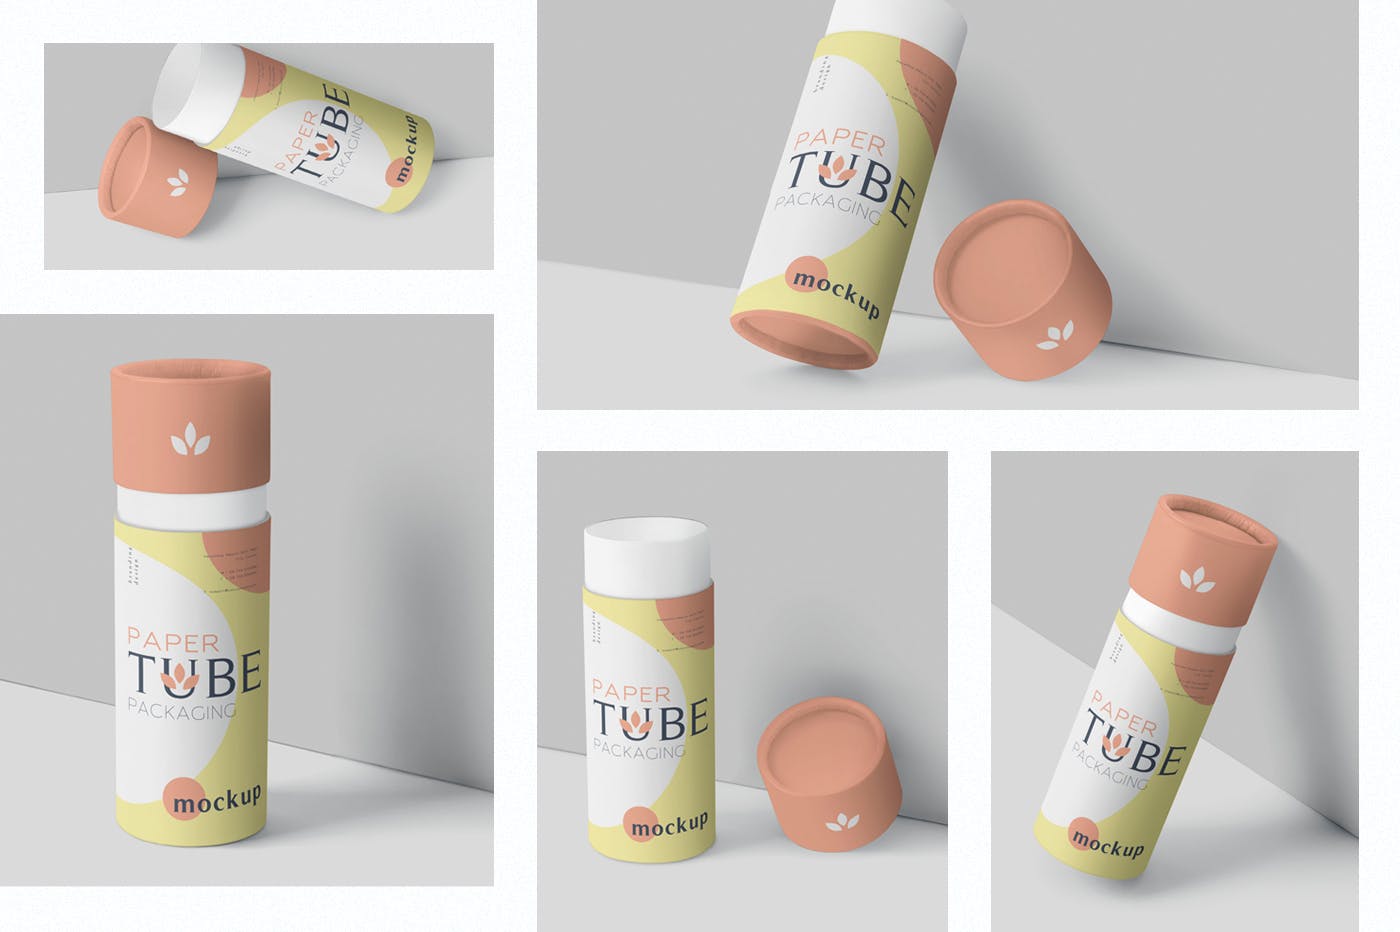 纸管包装外观设计效果图第一素材精选模板 Paper Tube Packaging Mockup Set – Slim插图(1)